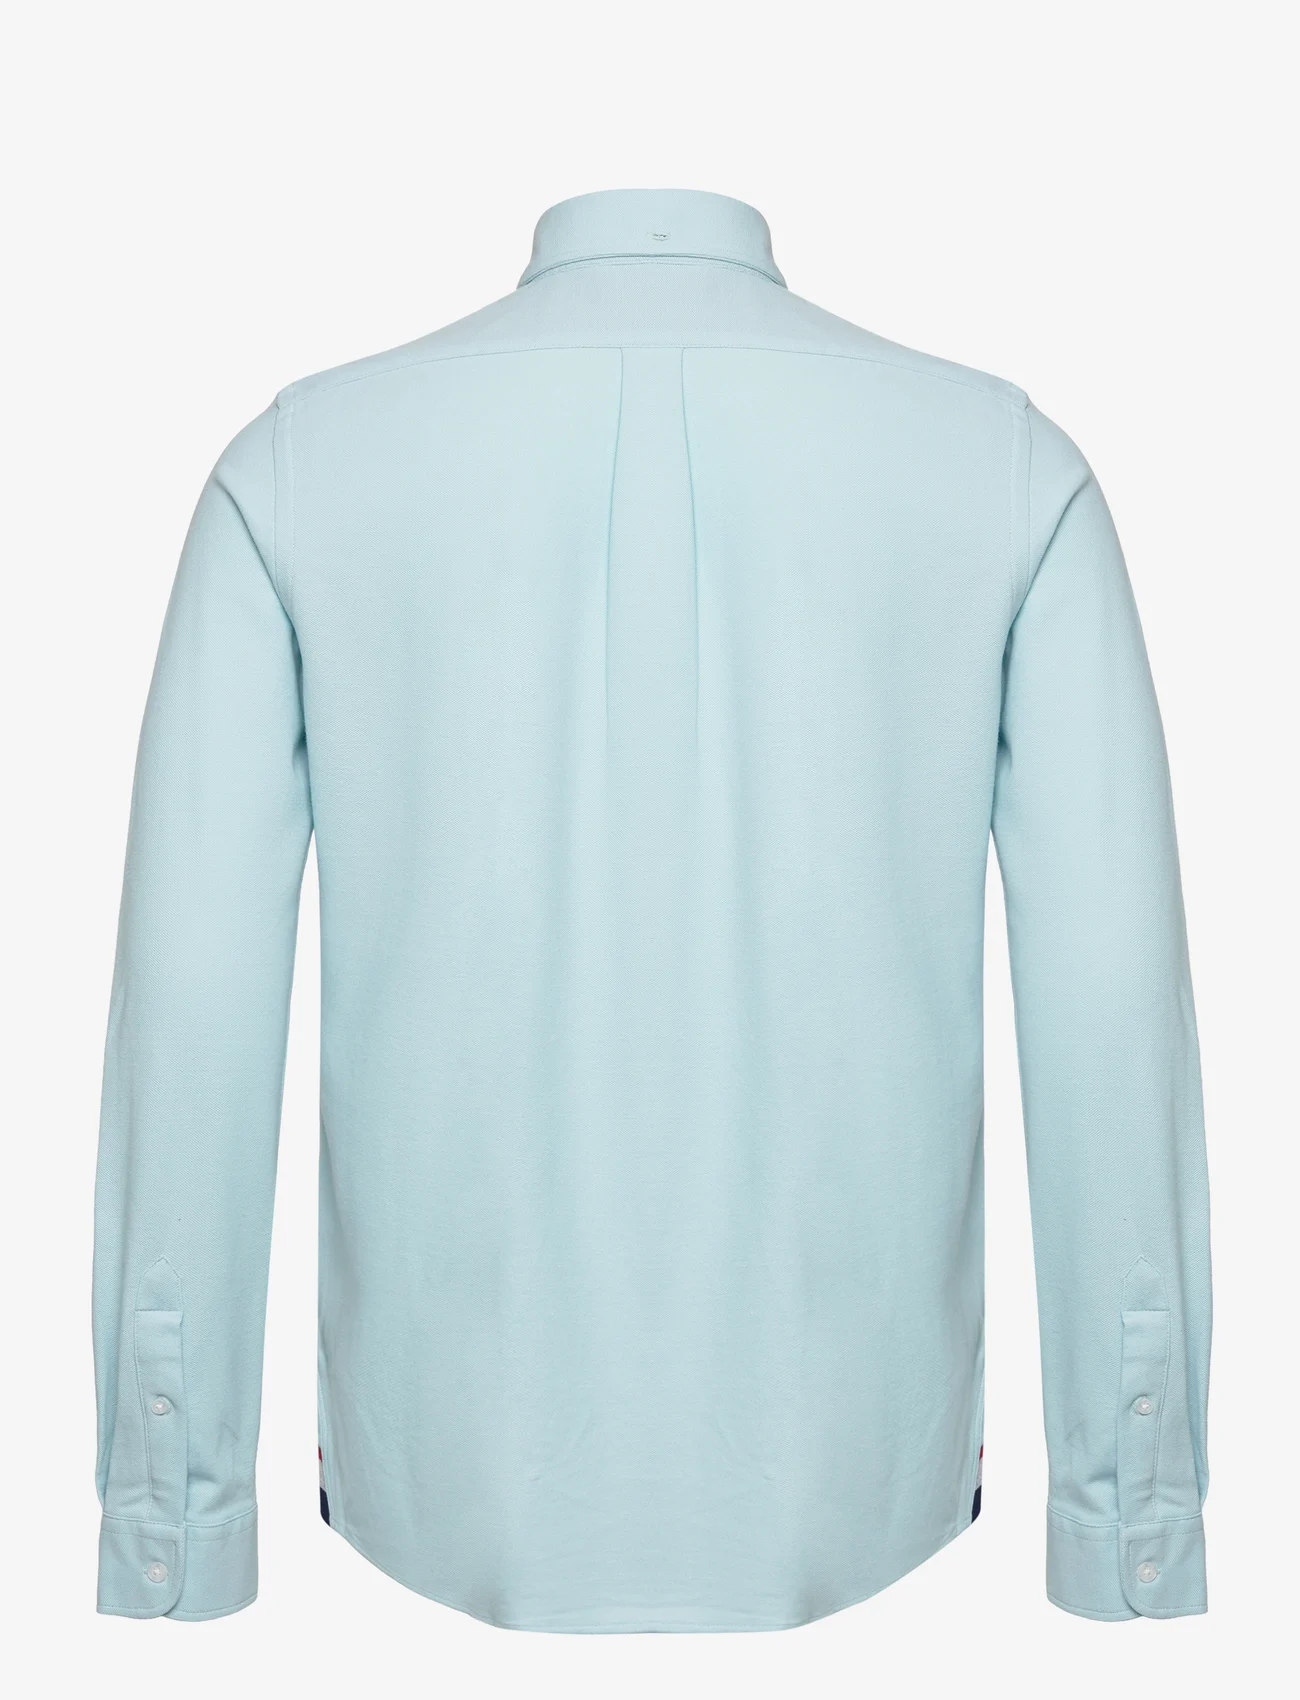 U.S. Polo Assn. - USPA Shirt August Men - basic-hemden - light blue - 1